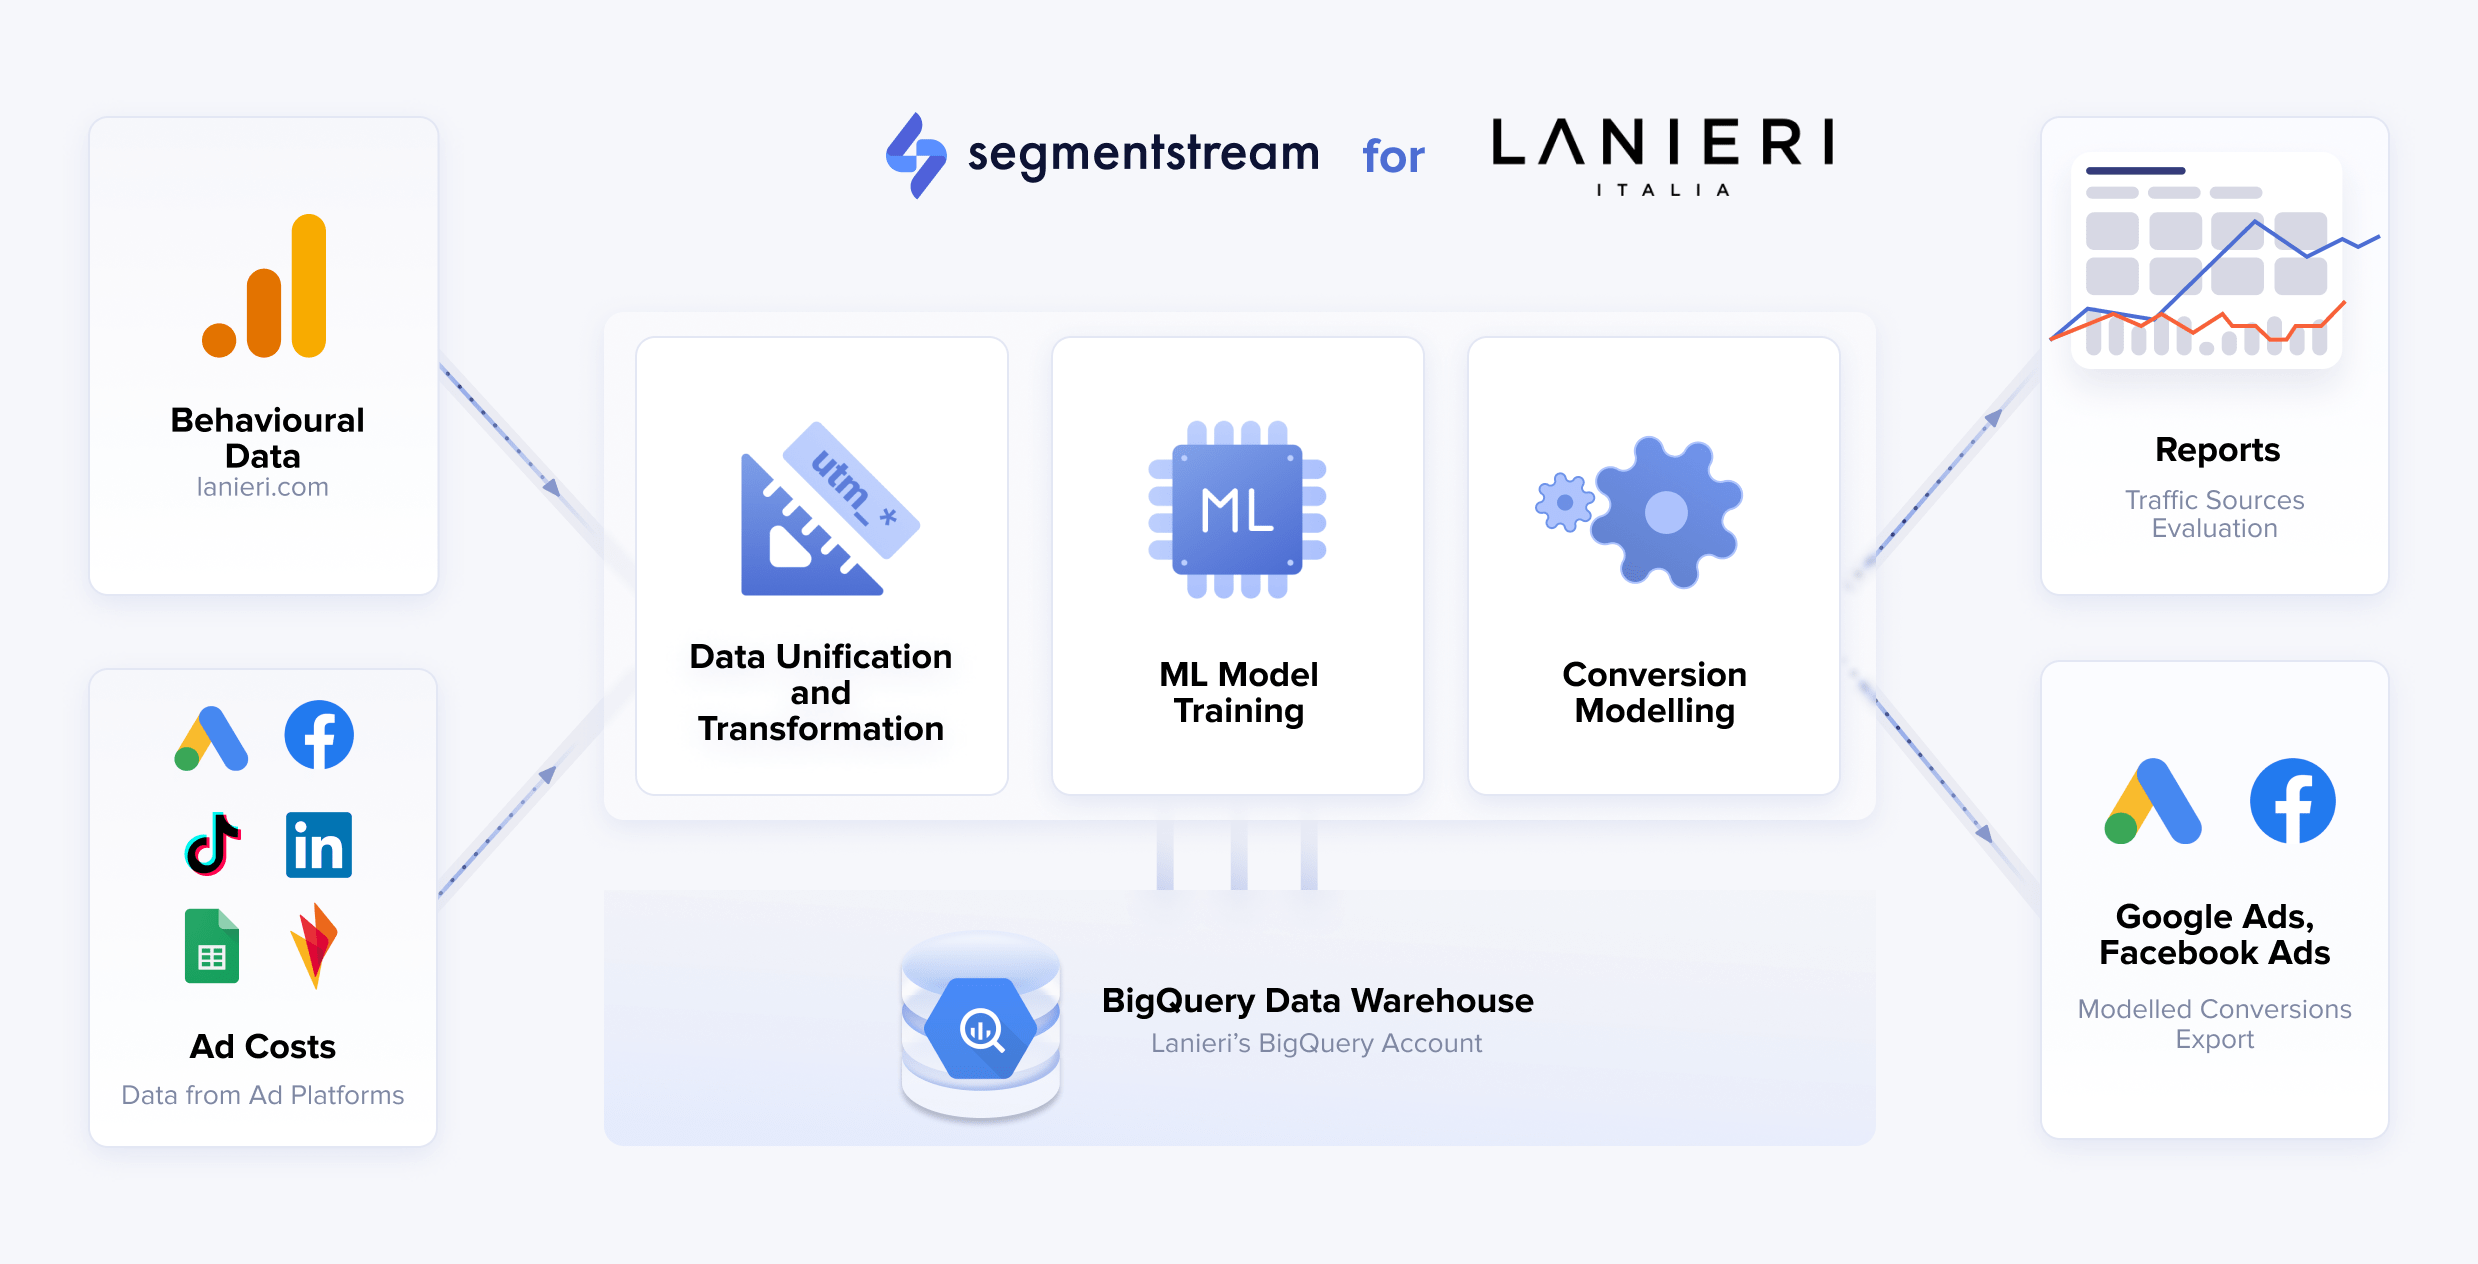 SegmentStream solution architecture for Lanieri